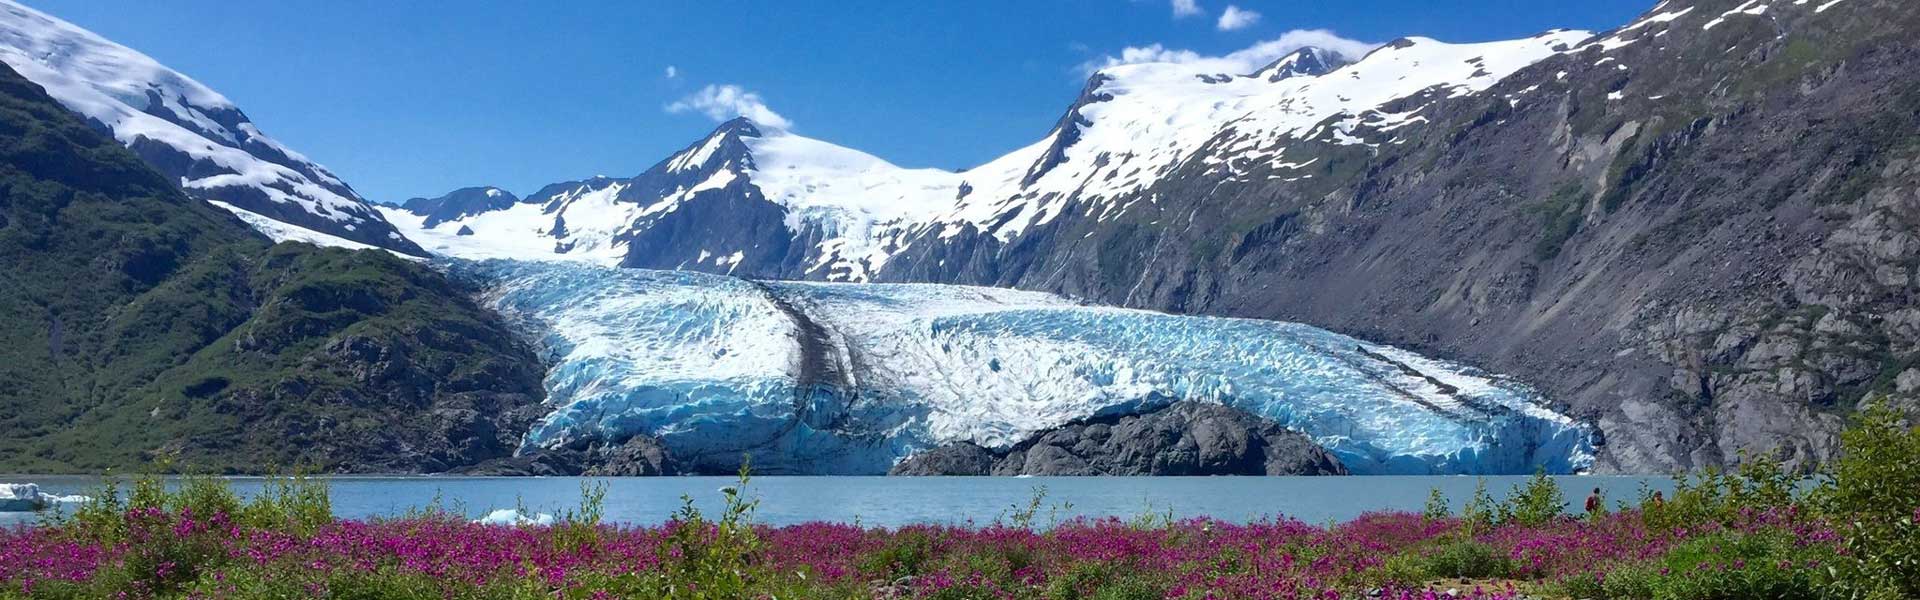 Whittier | Whittier Alaska Day Tours Sightseeing & Cruises